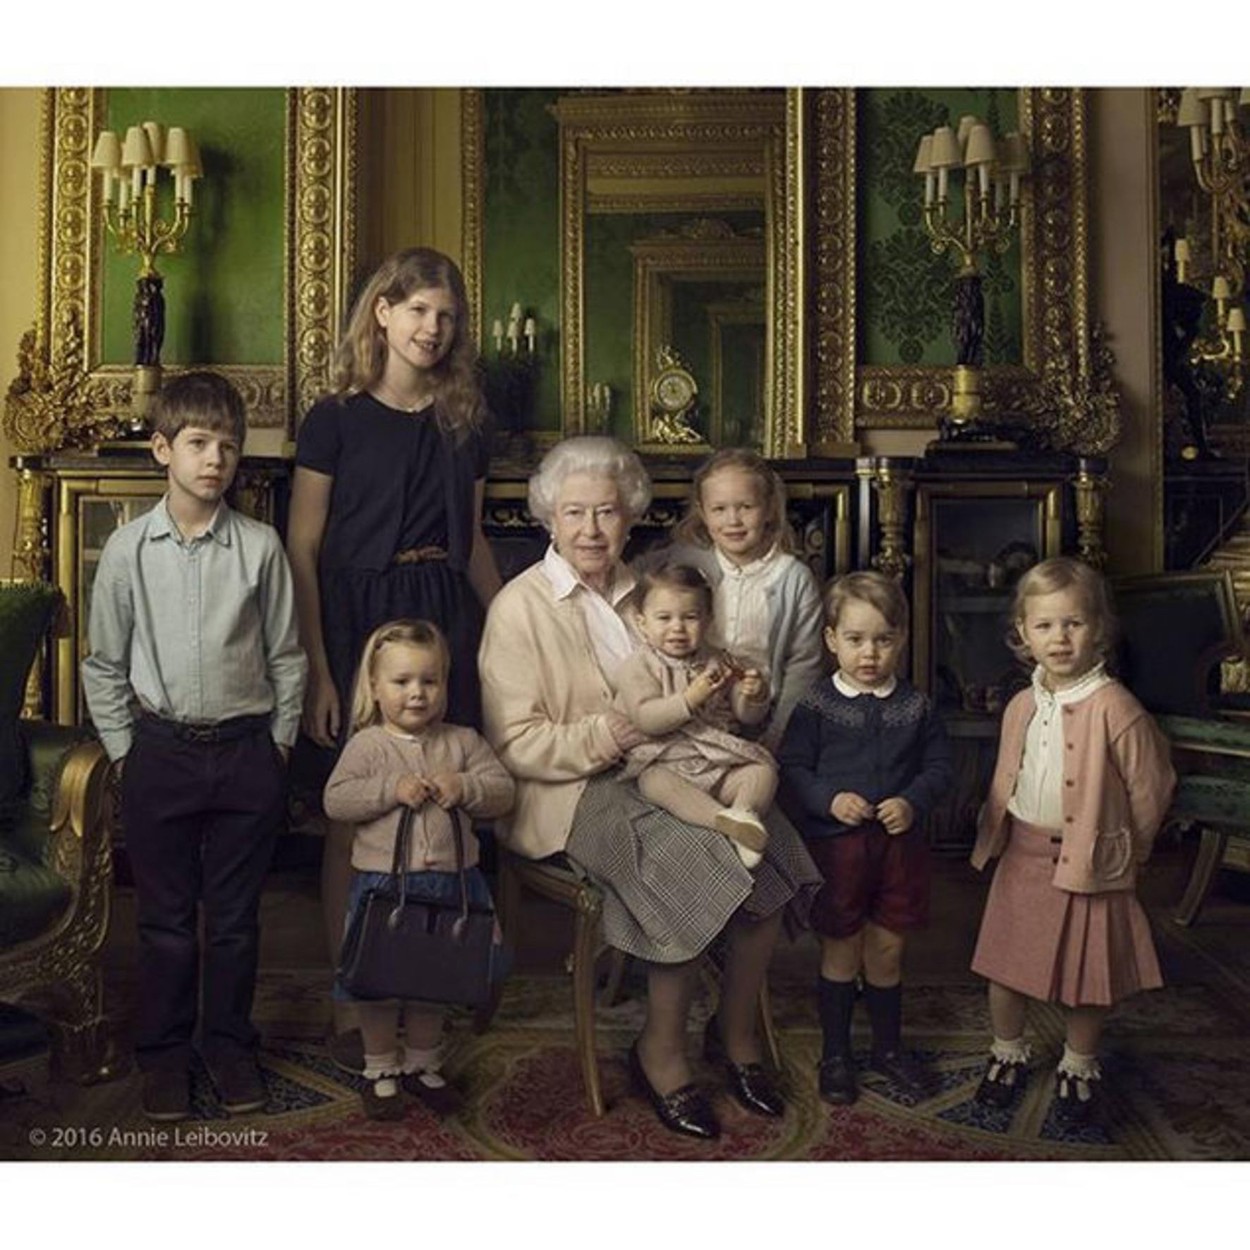 Középen: II. Erzsébet. Balról jobbra: ( a királynő legfiatalabb unokái) James, Viscount grófja, Lady Lujza Alíz Erzsébet Mary Mountbatten-Windsor, (a királynő dédunokái) Mia Tindall, Charlotte hercegn